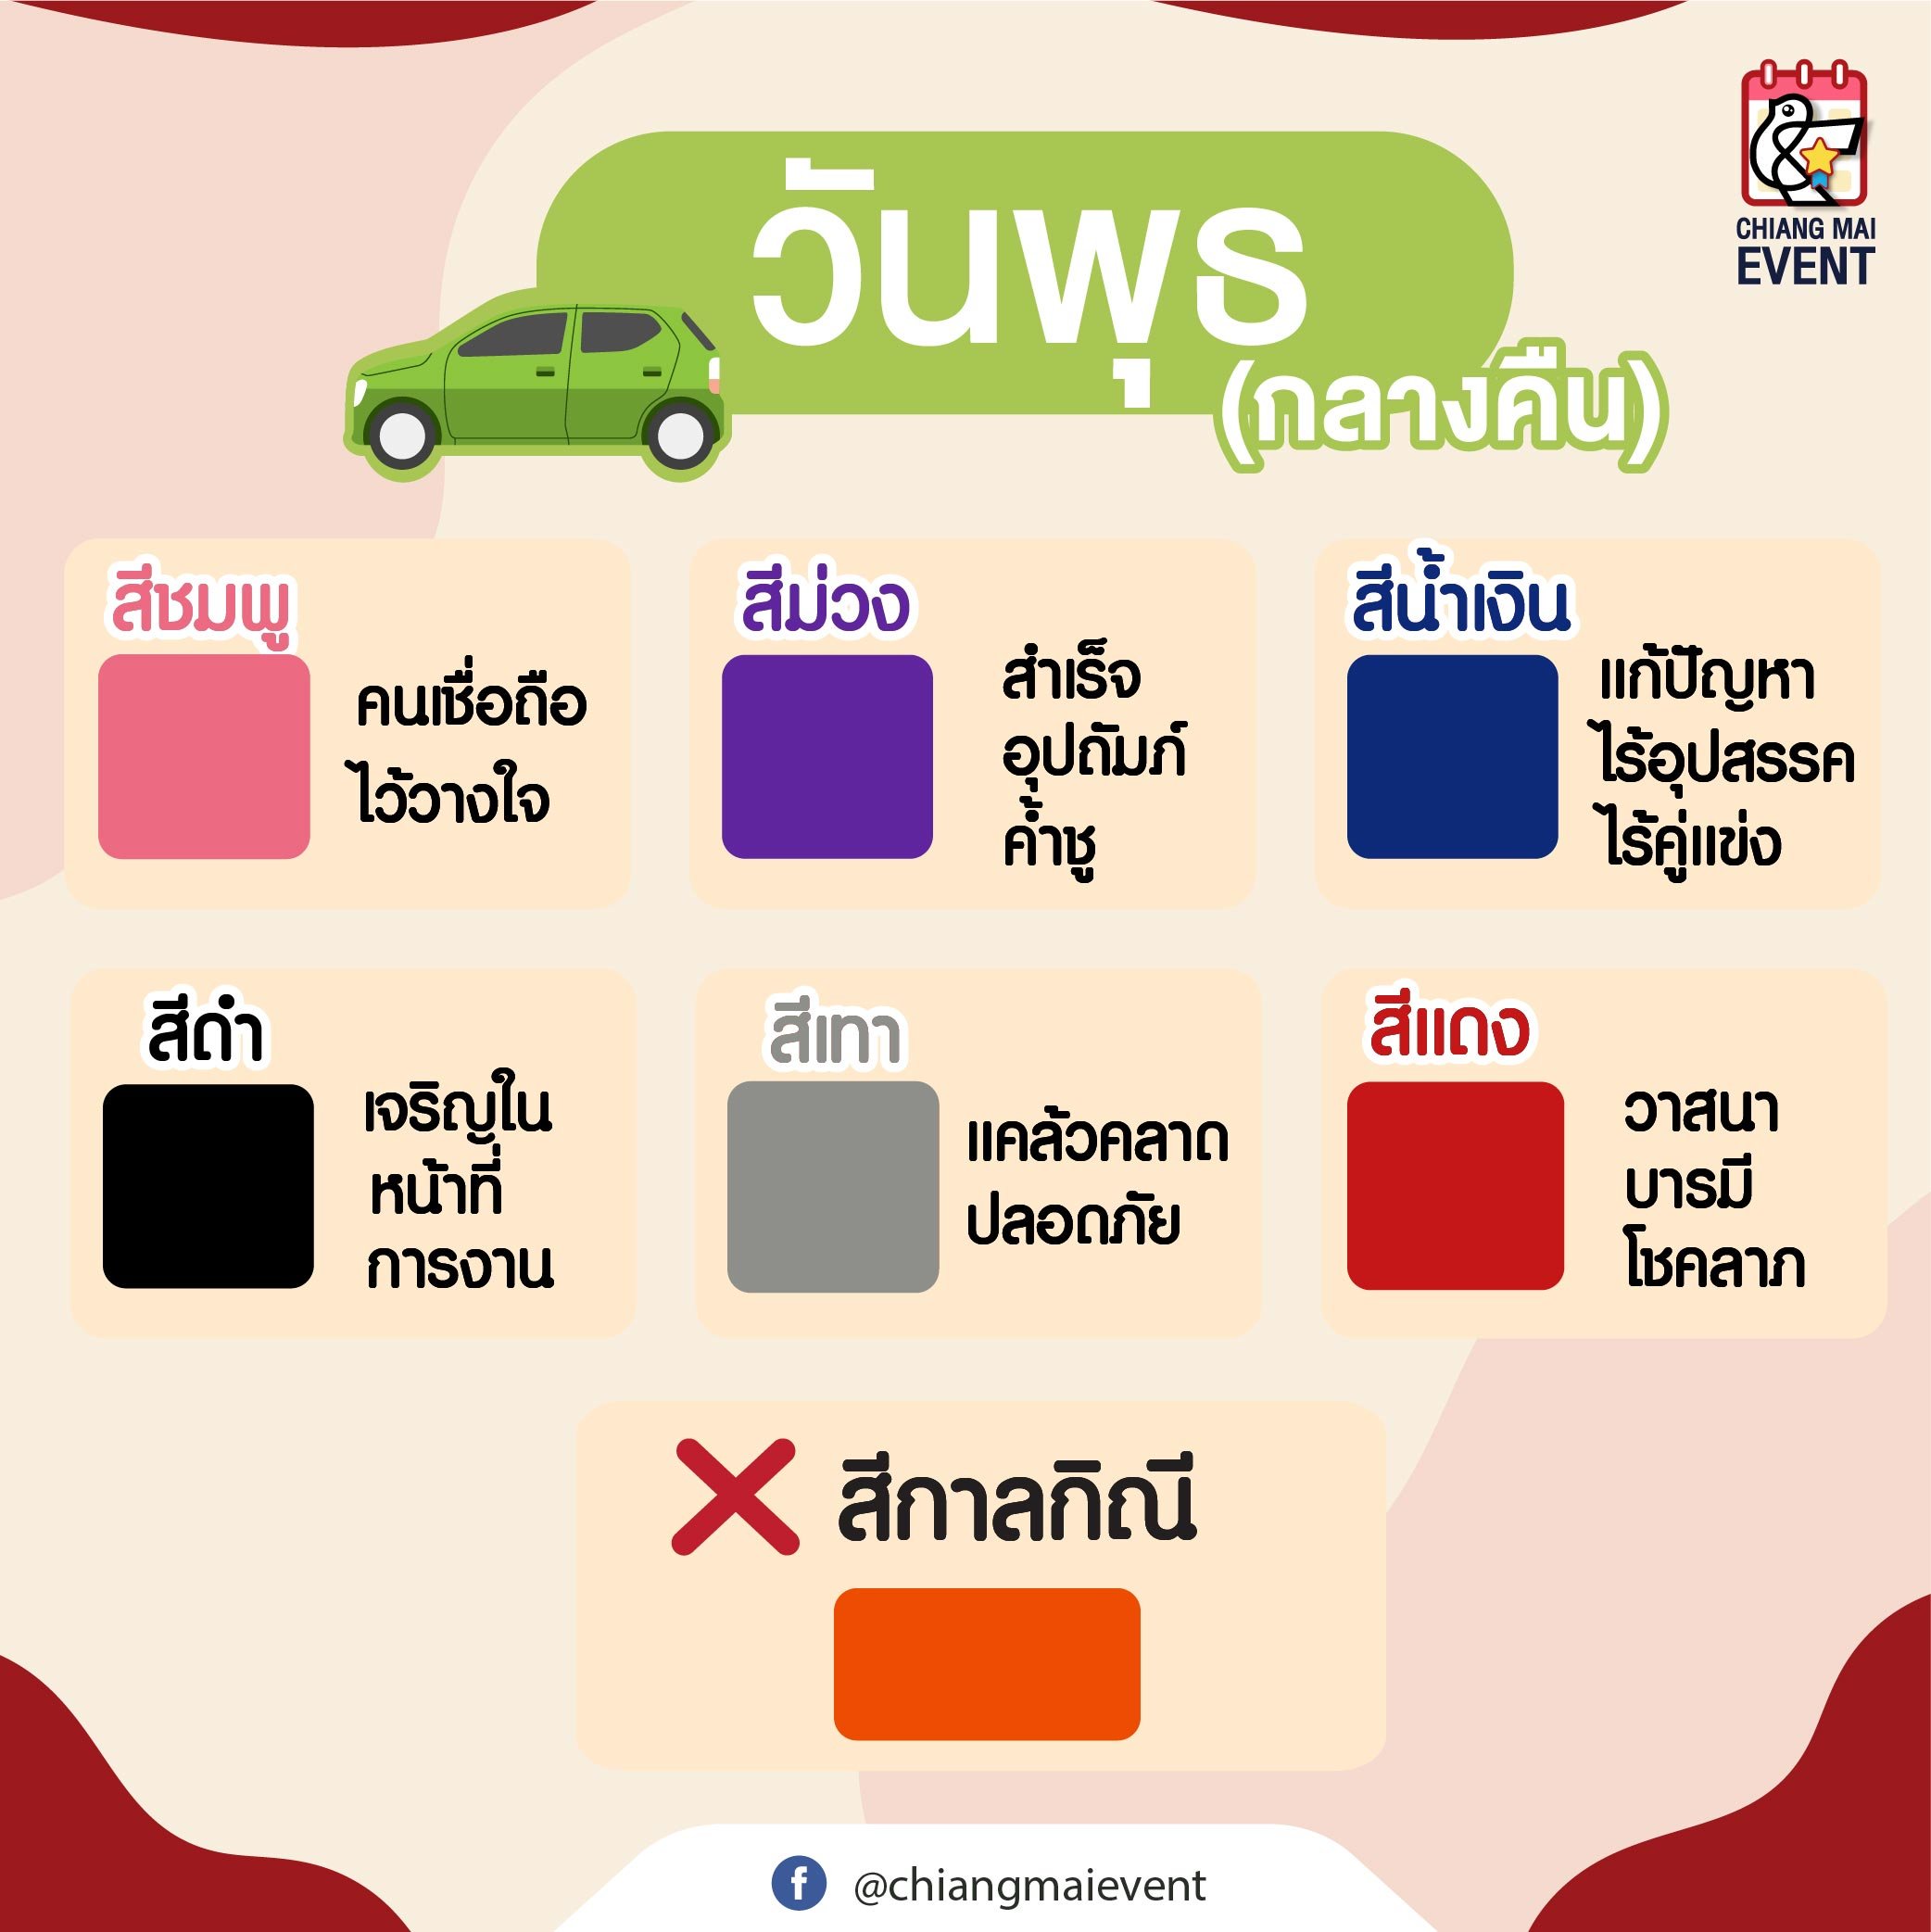 สายมูต้องรู้! สีรถถูกโฉลกตามวันเกิด สีไหนรุ่ง สีไหนปังเช็กเลย - Chiang Mai  News